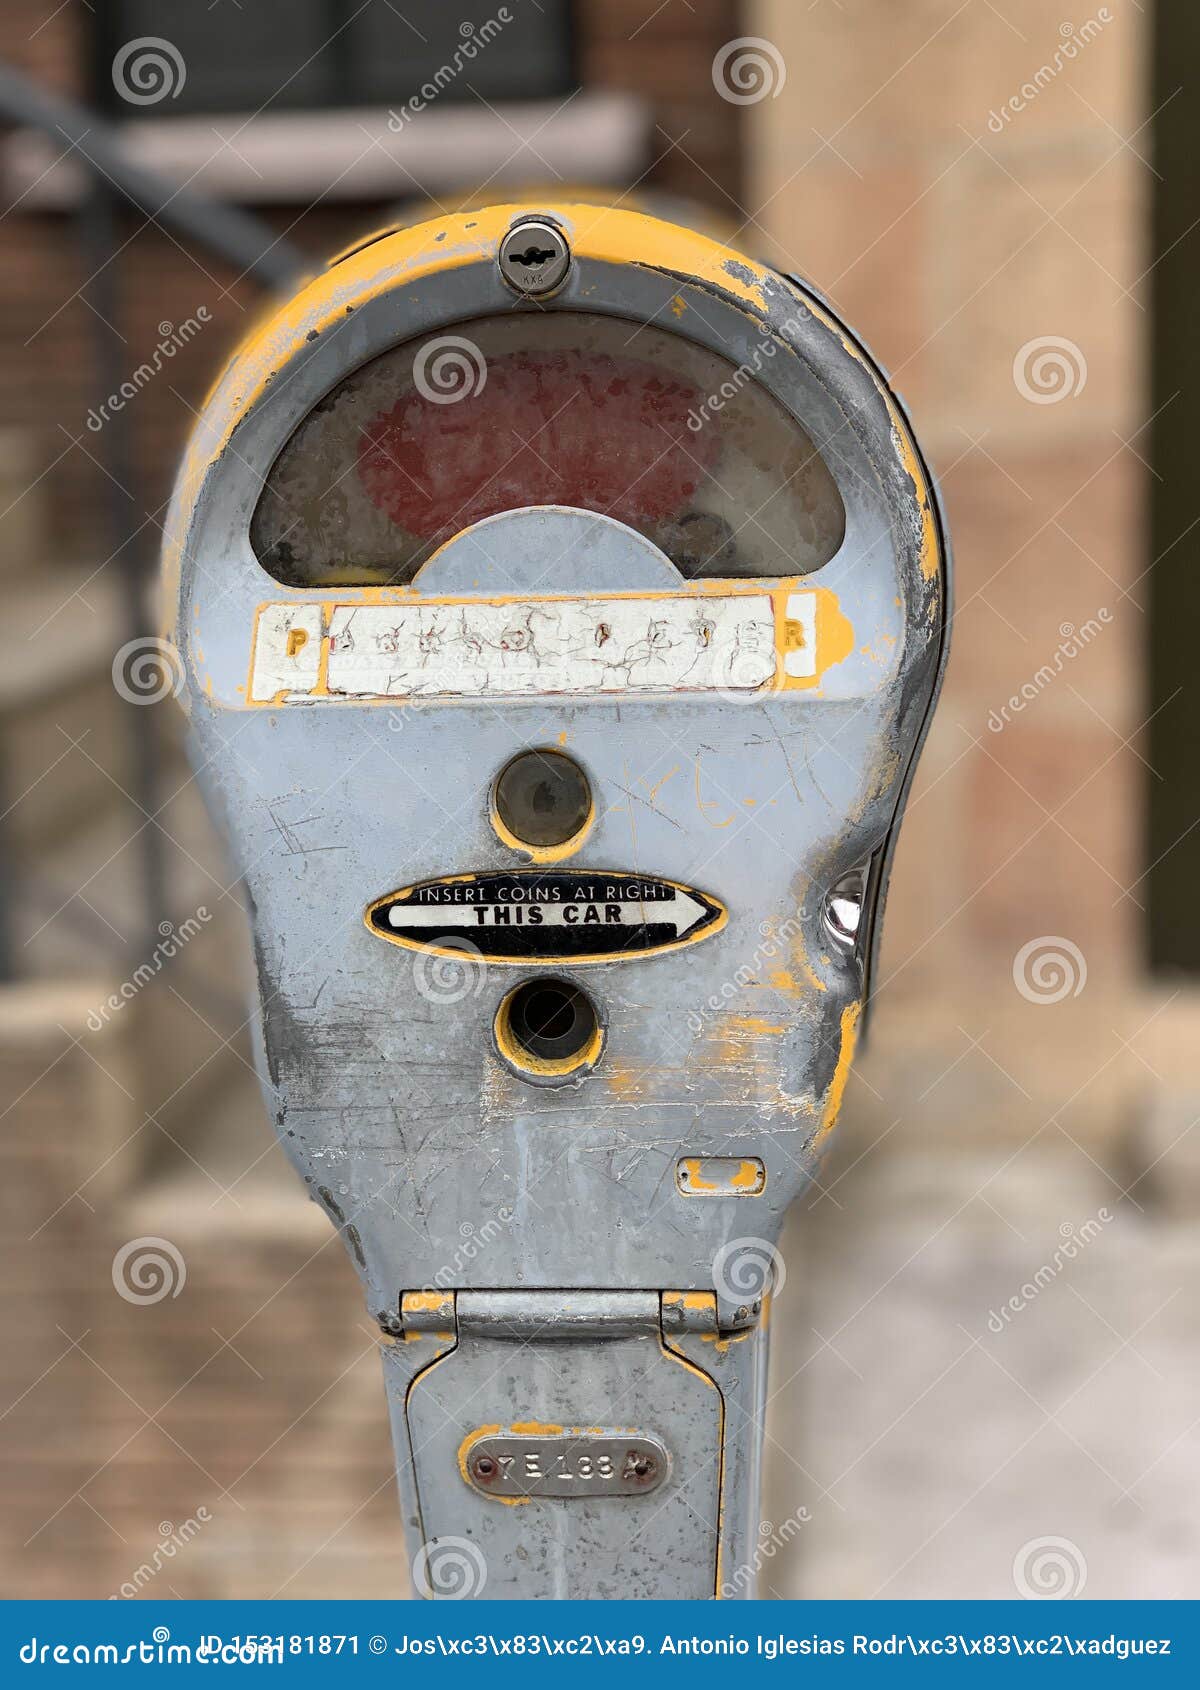 tijdschrift Correctie Kinderrijmpjes Antique parking meter stock image. Image of payment - 153181871